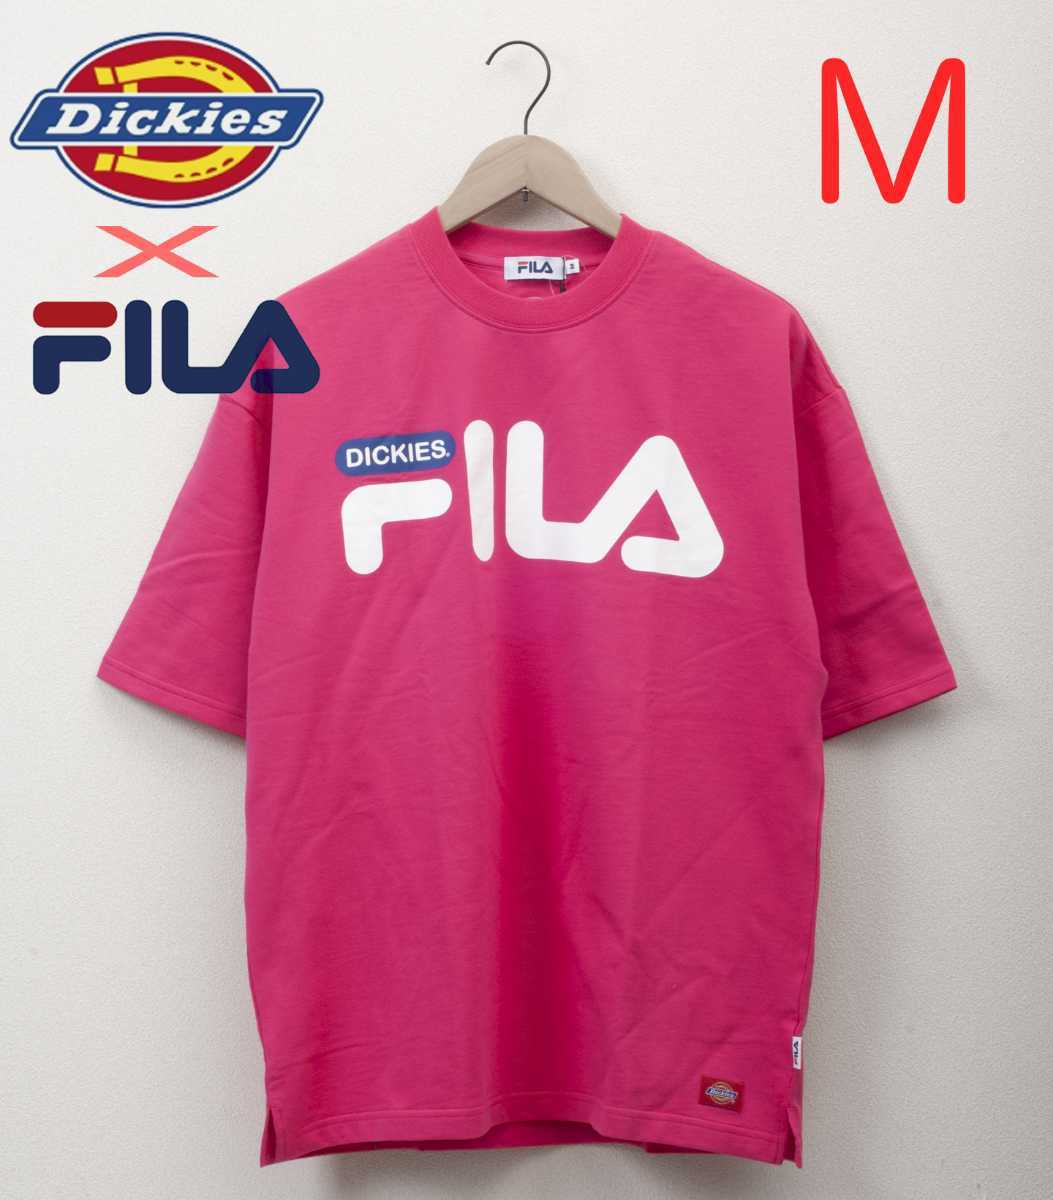 【新品未使用】Mサイズ Dickies FILA ロゴ入り五分袖ワイドTシャツ！ 5分袖 ディッキーズ フィラ ピンク ブランド ストリート ゆったり